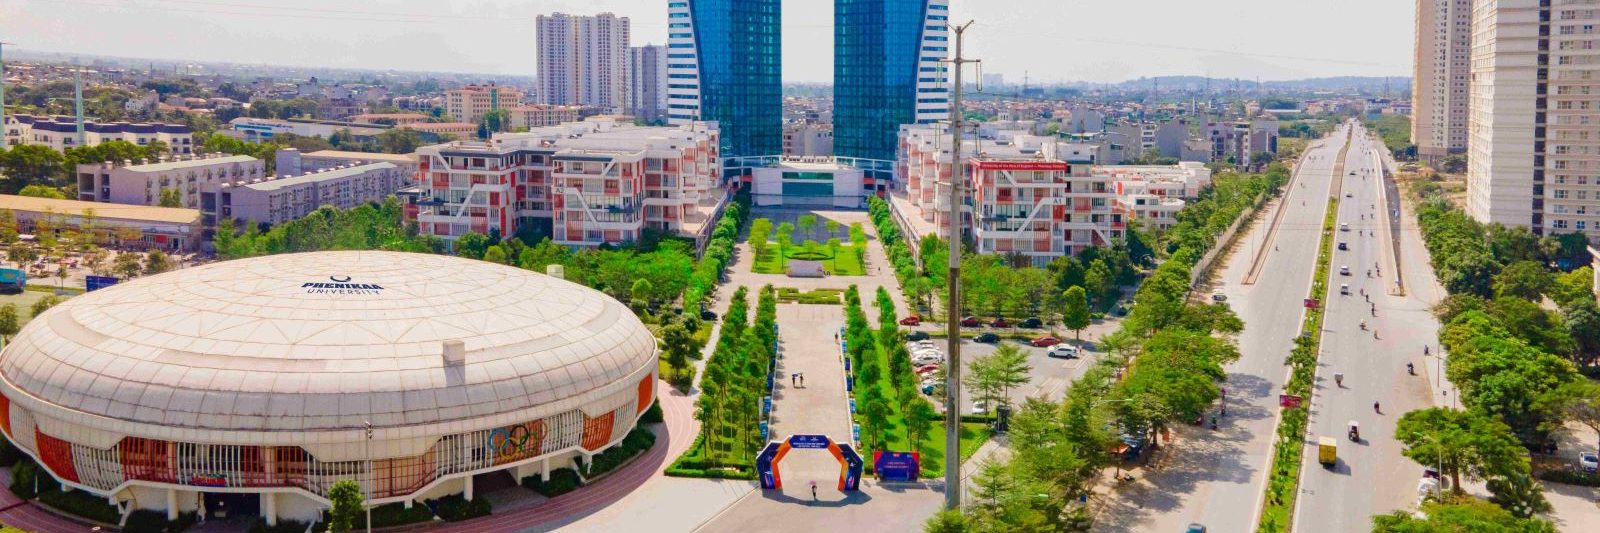 Trường Đại học Phenikaa Yên Nghĩa - địa điểm tổ chức hội thảo quốc tế về nguồn nhân lực bán dẫn Việt Nam trong chuỗi cung ứng toàn cầu.